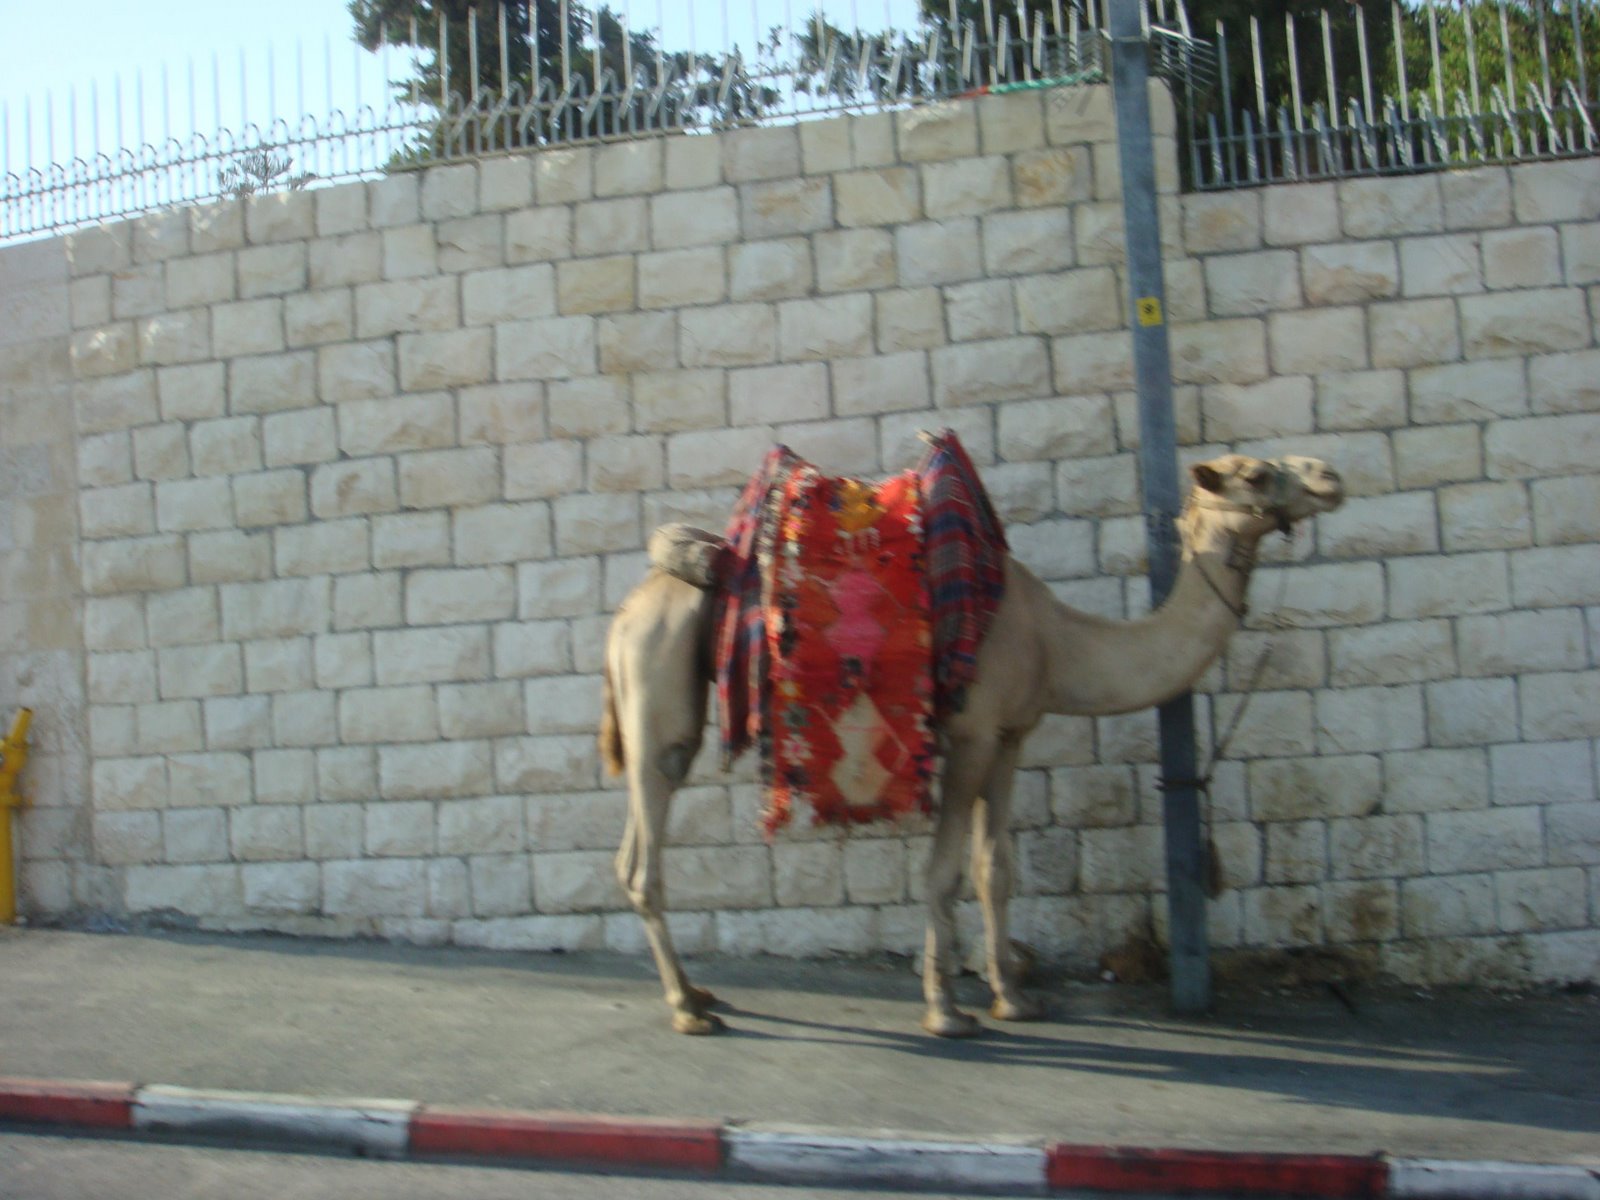 [camel.JPG]